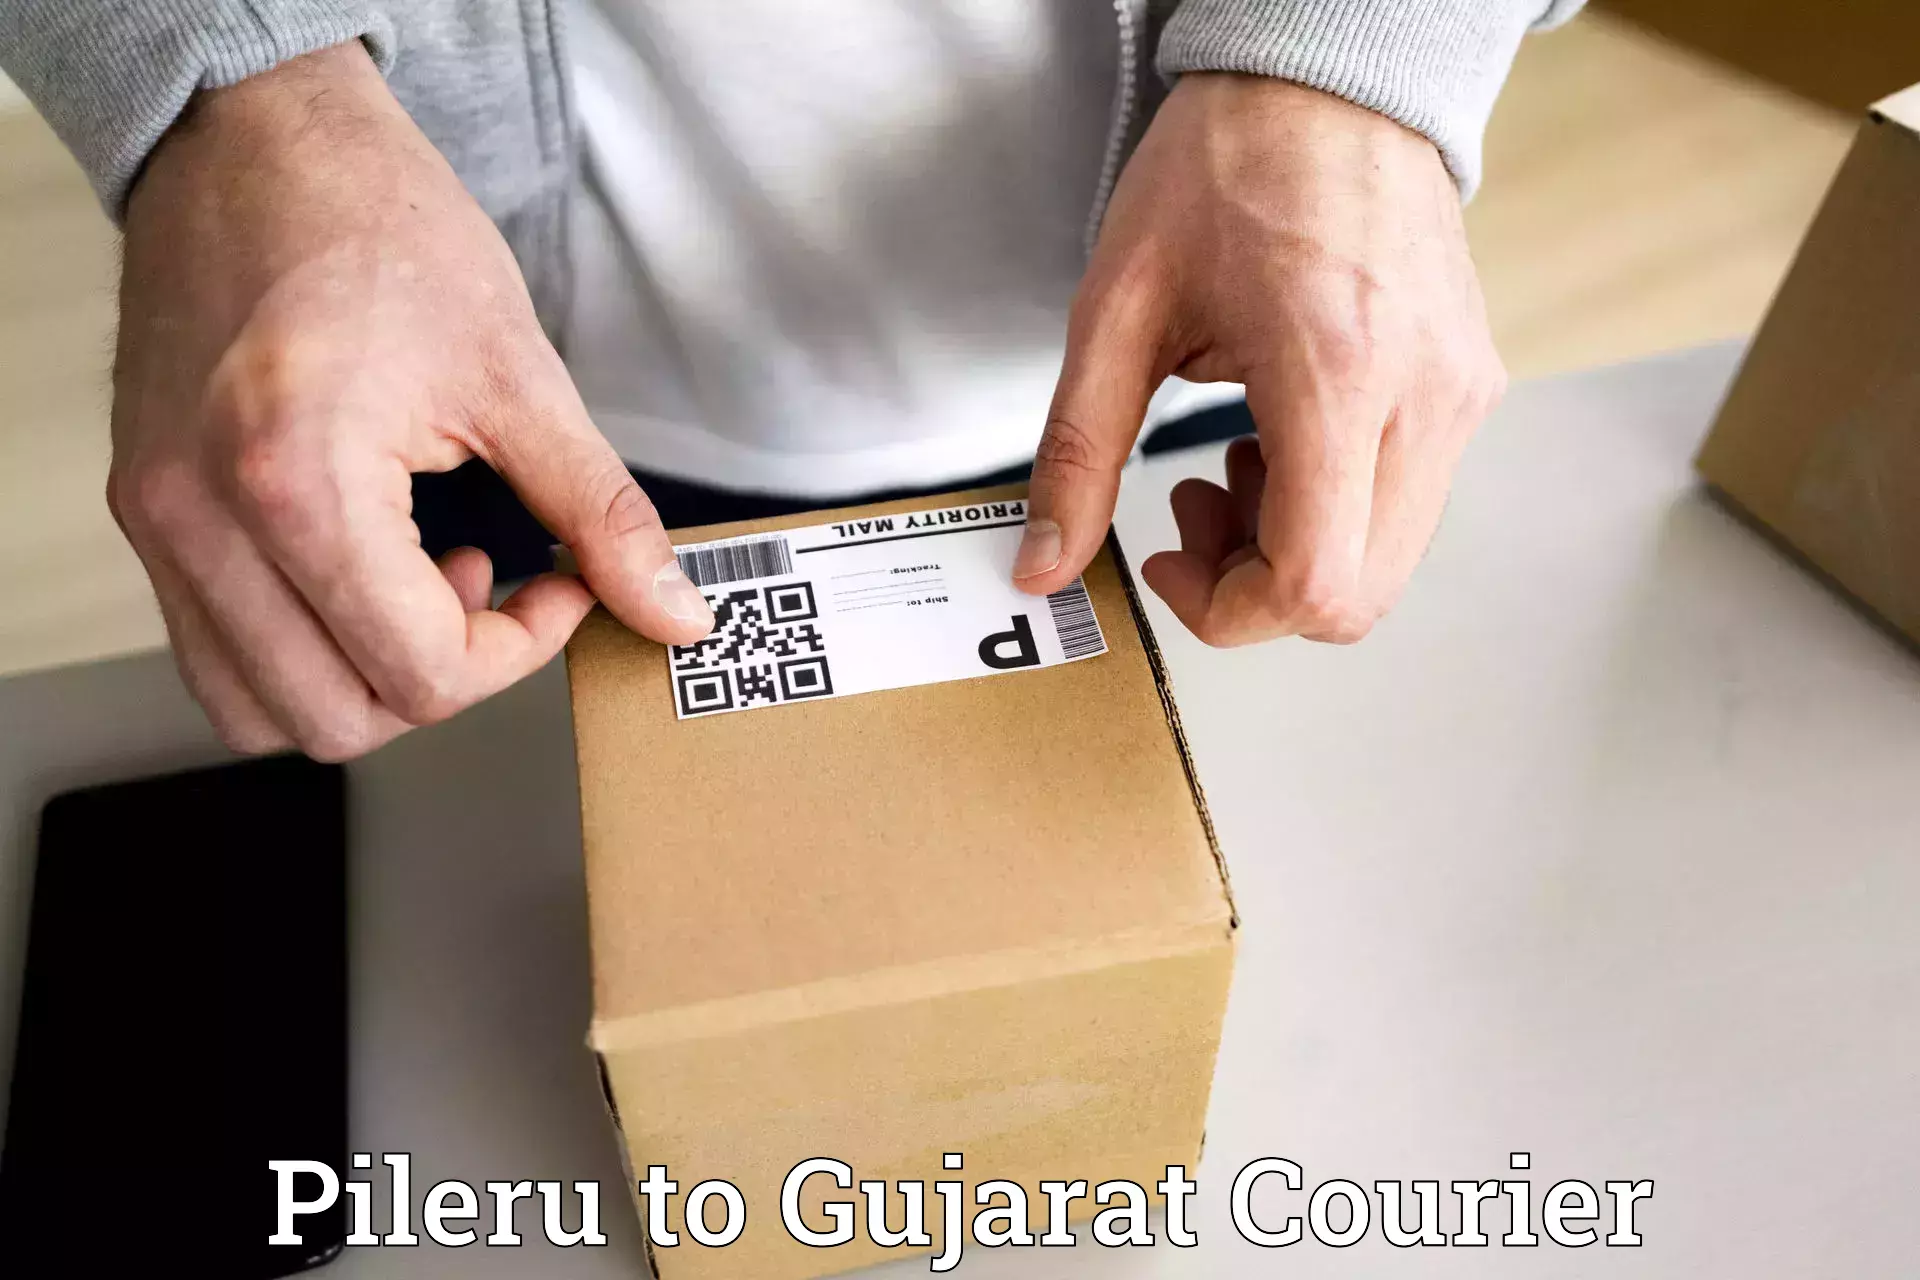 Easy access courier services Pileru to Dahej